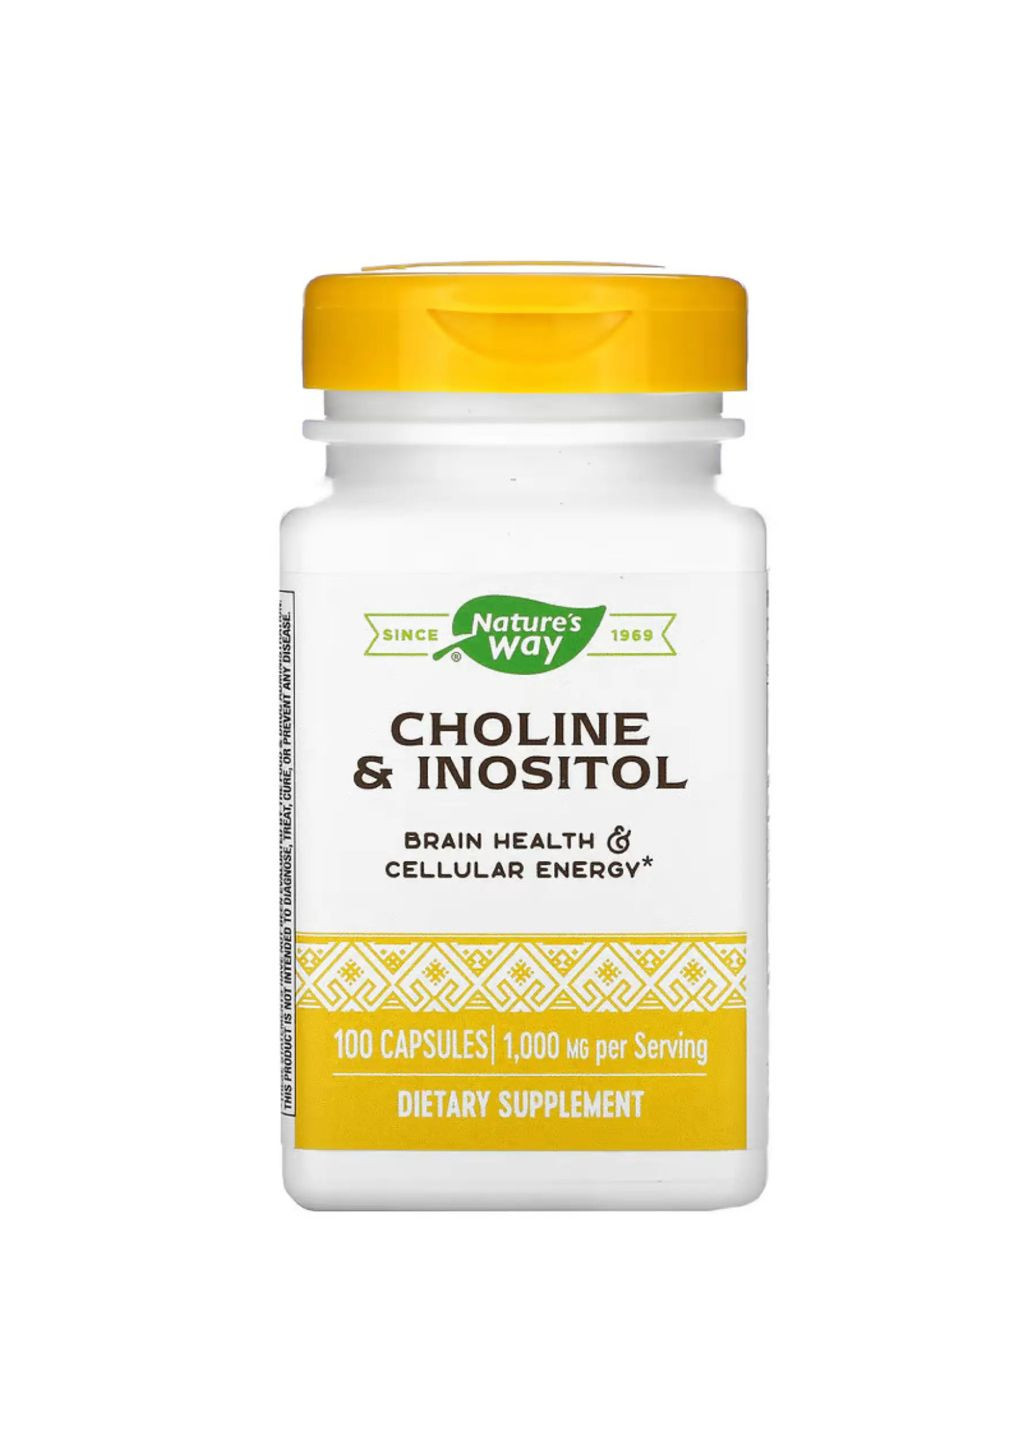 Choline & Inositol - 100 caps добавка для здоров'я мозку та енергії на клітинному рівні Nature's Way (284171989)